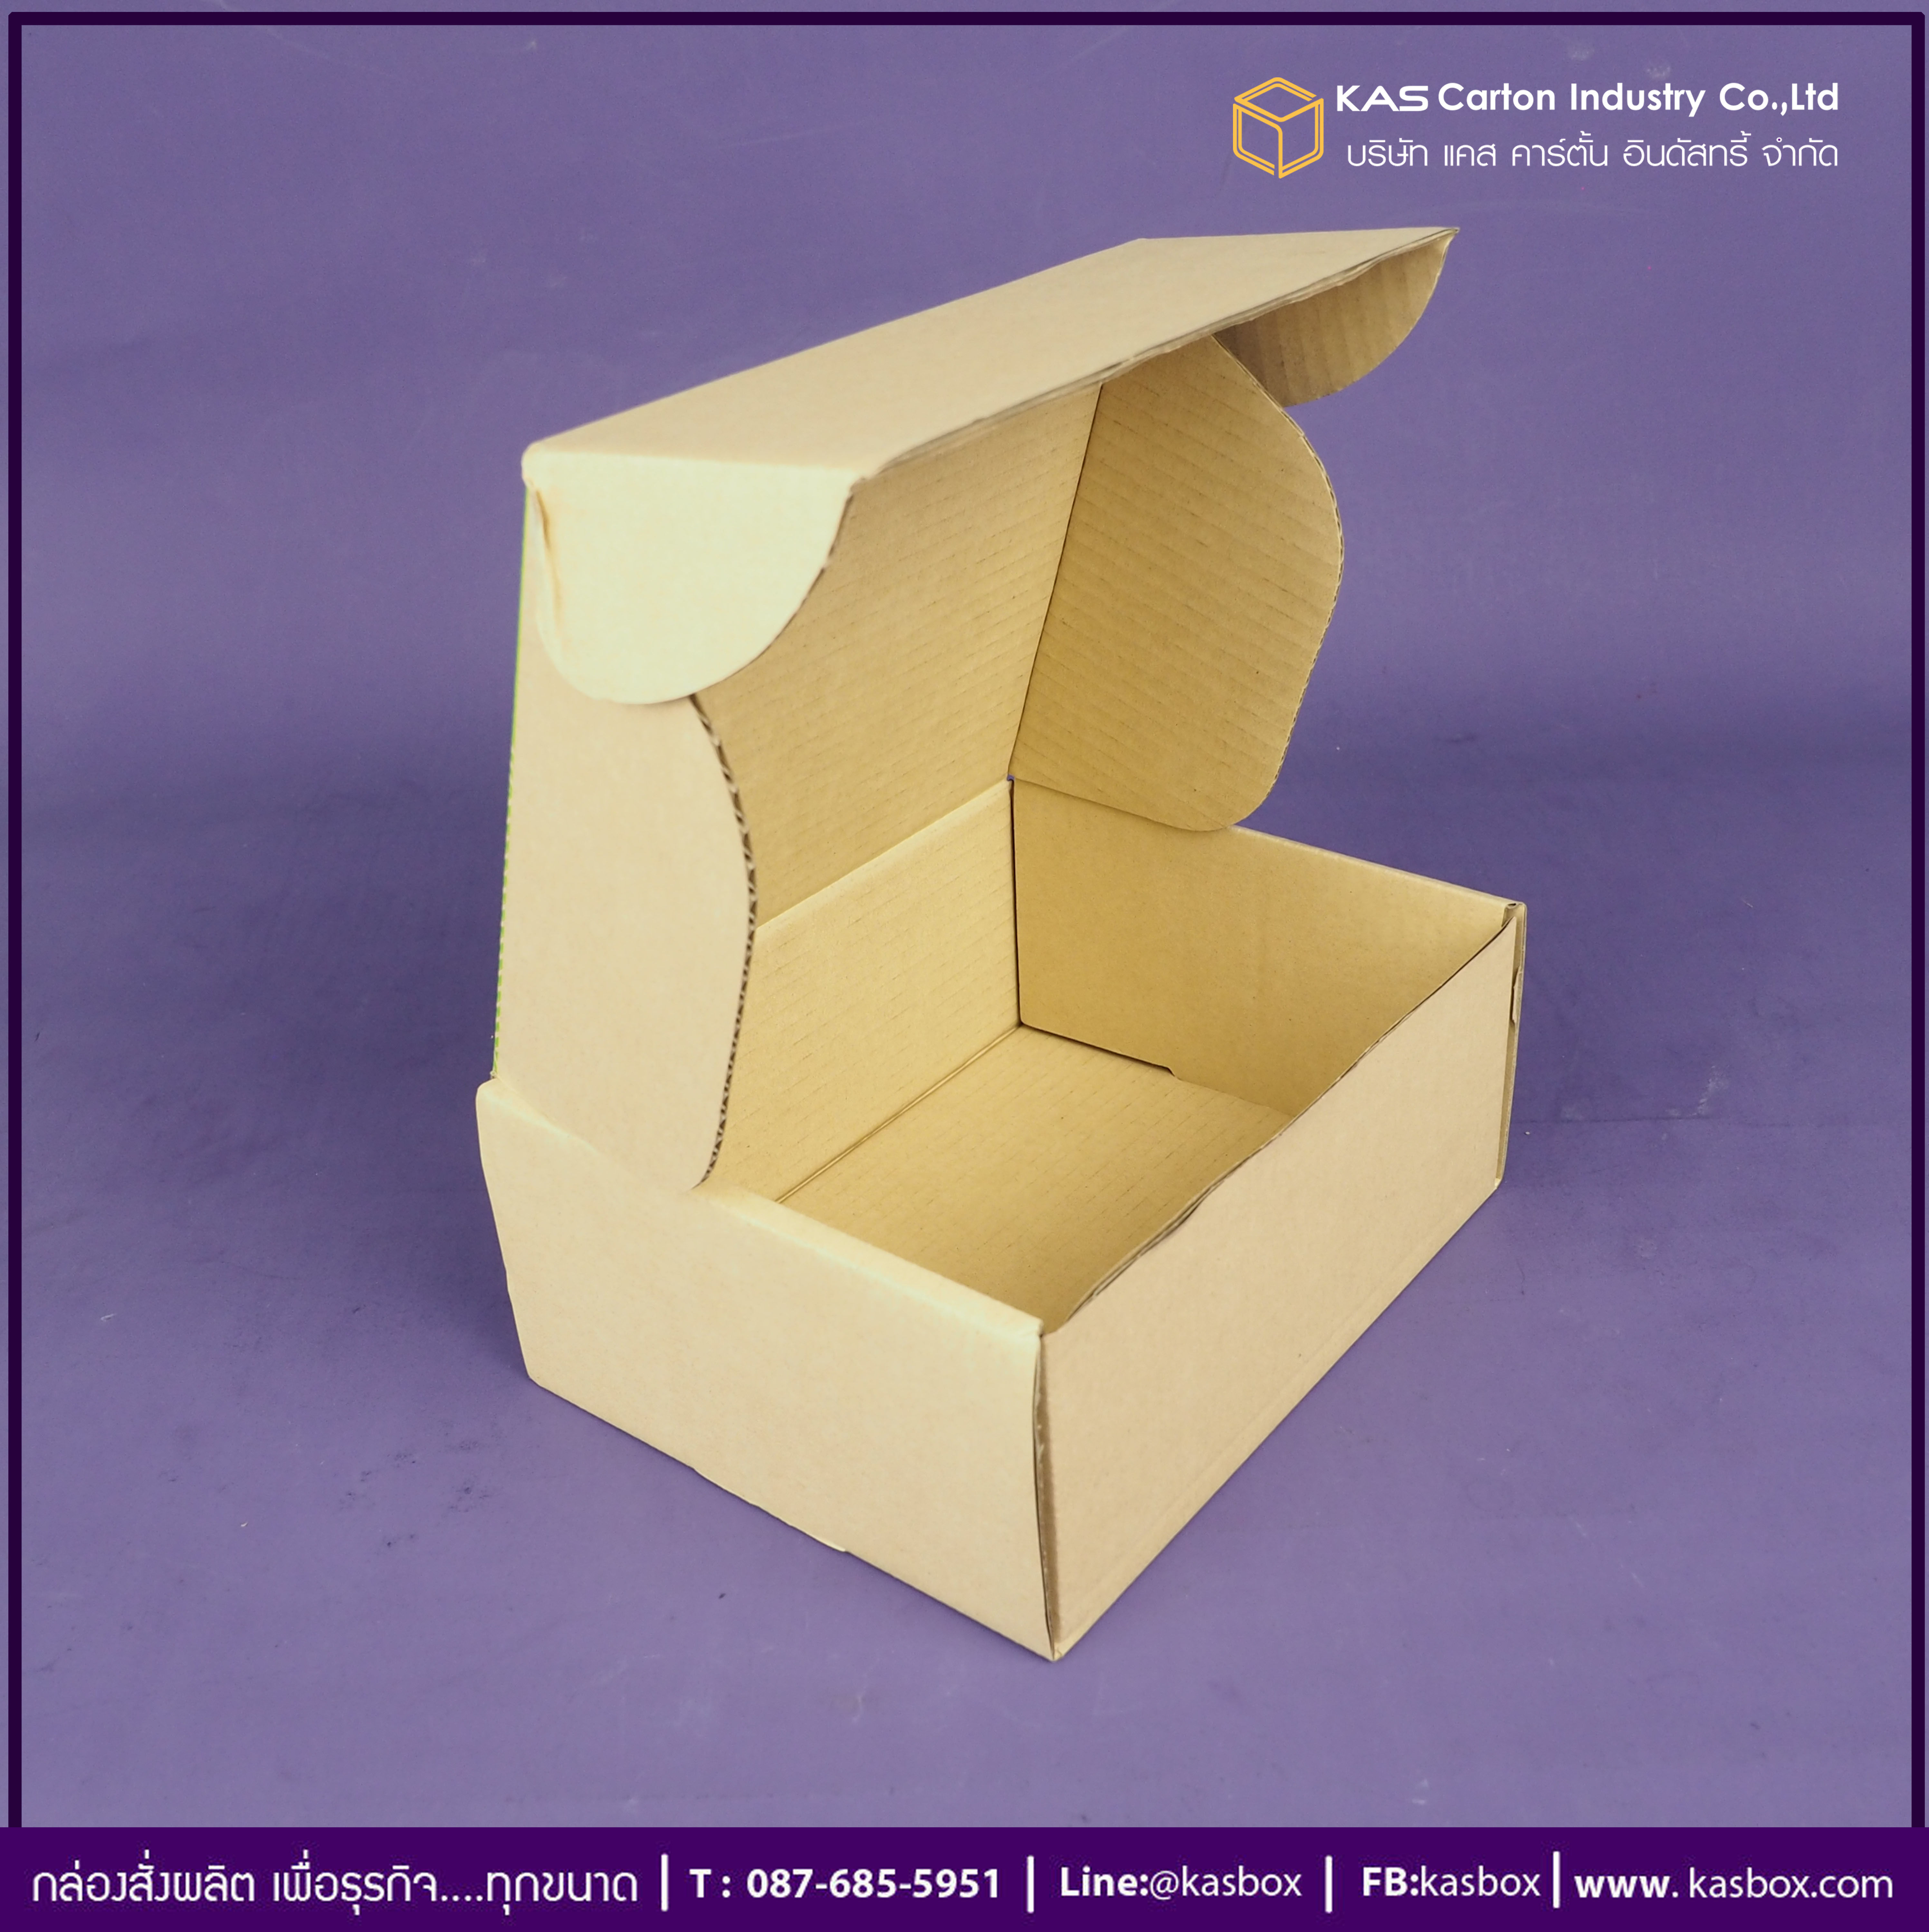 กล่องลูกฟูก สำเร็จรูป และ สั่งผลิต ตามความต้องการลูกค้า กล่องลูกฟูก SME กล่องกระดาษลูกฟูก ใส่อาหารเวียดนาม VTแหนมเนือง